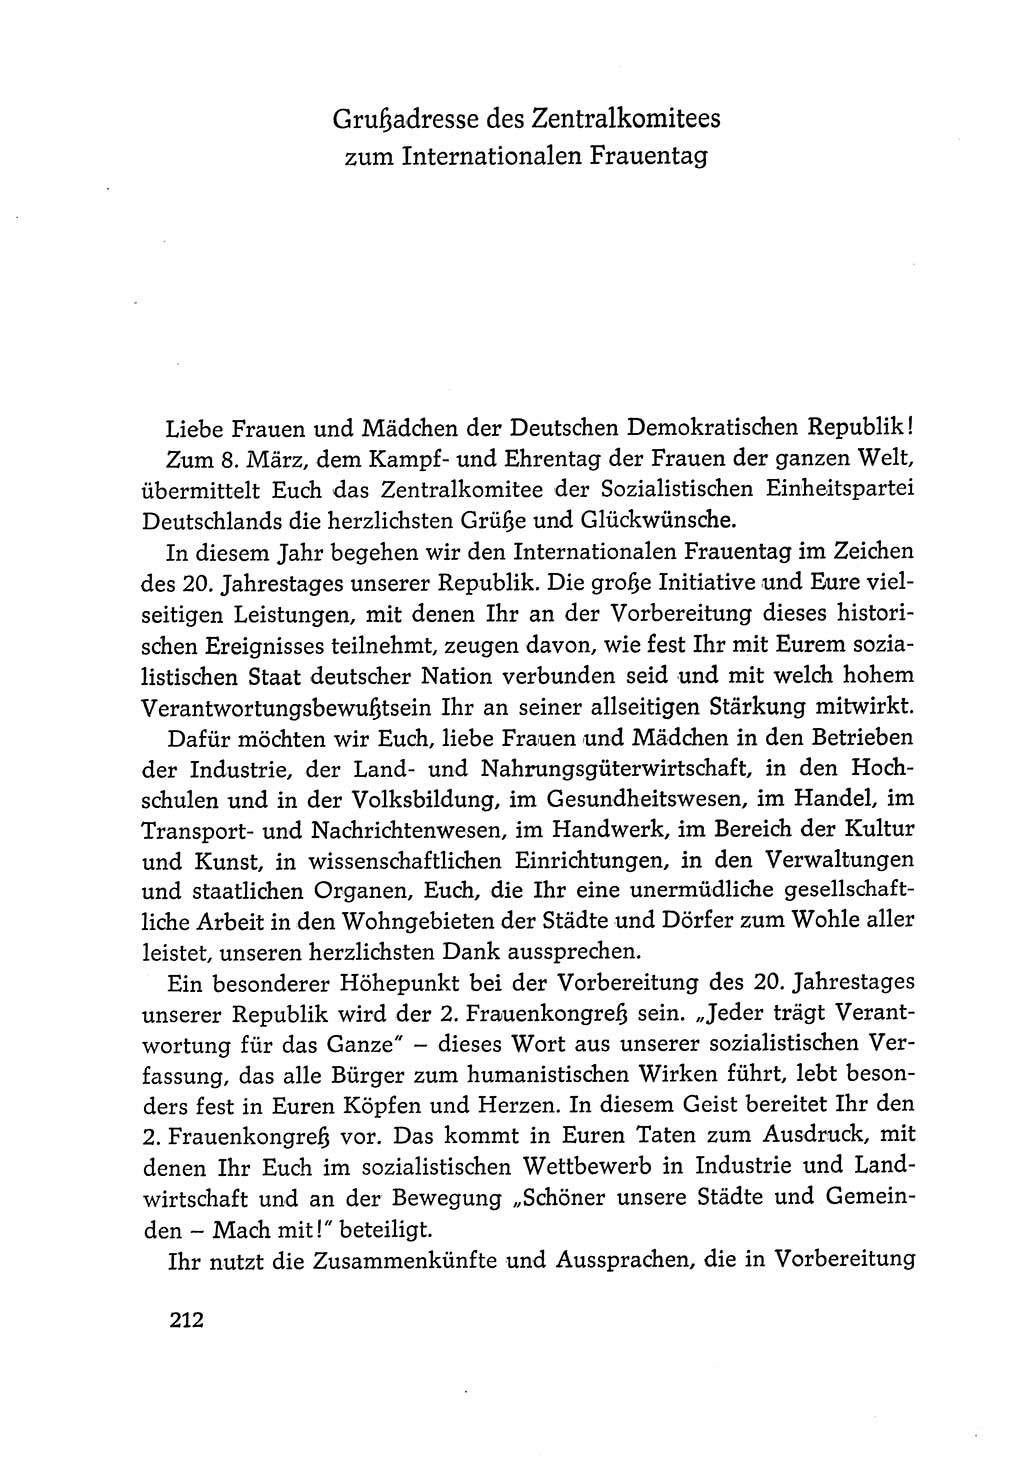 Dokumente der Sozialistischen Einheitspartei Deutschlands (SED) [Deutsche Demokratische Republik (DDR)] 1968-1969, Seite 212 (Dok. SED DDR 1968-1969, S. 212)